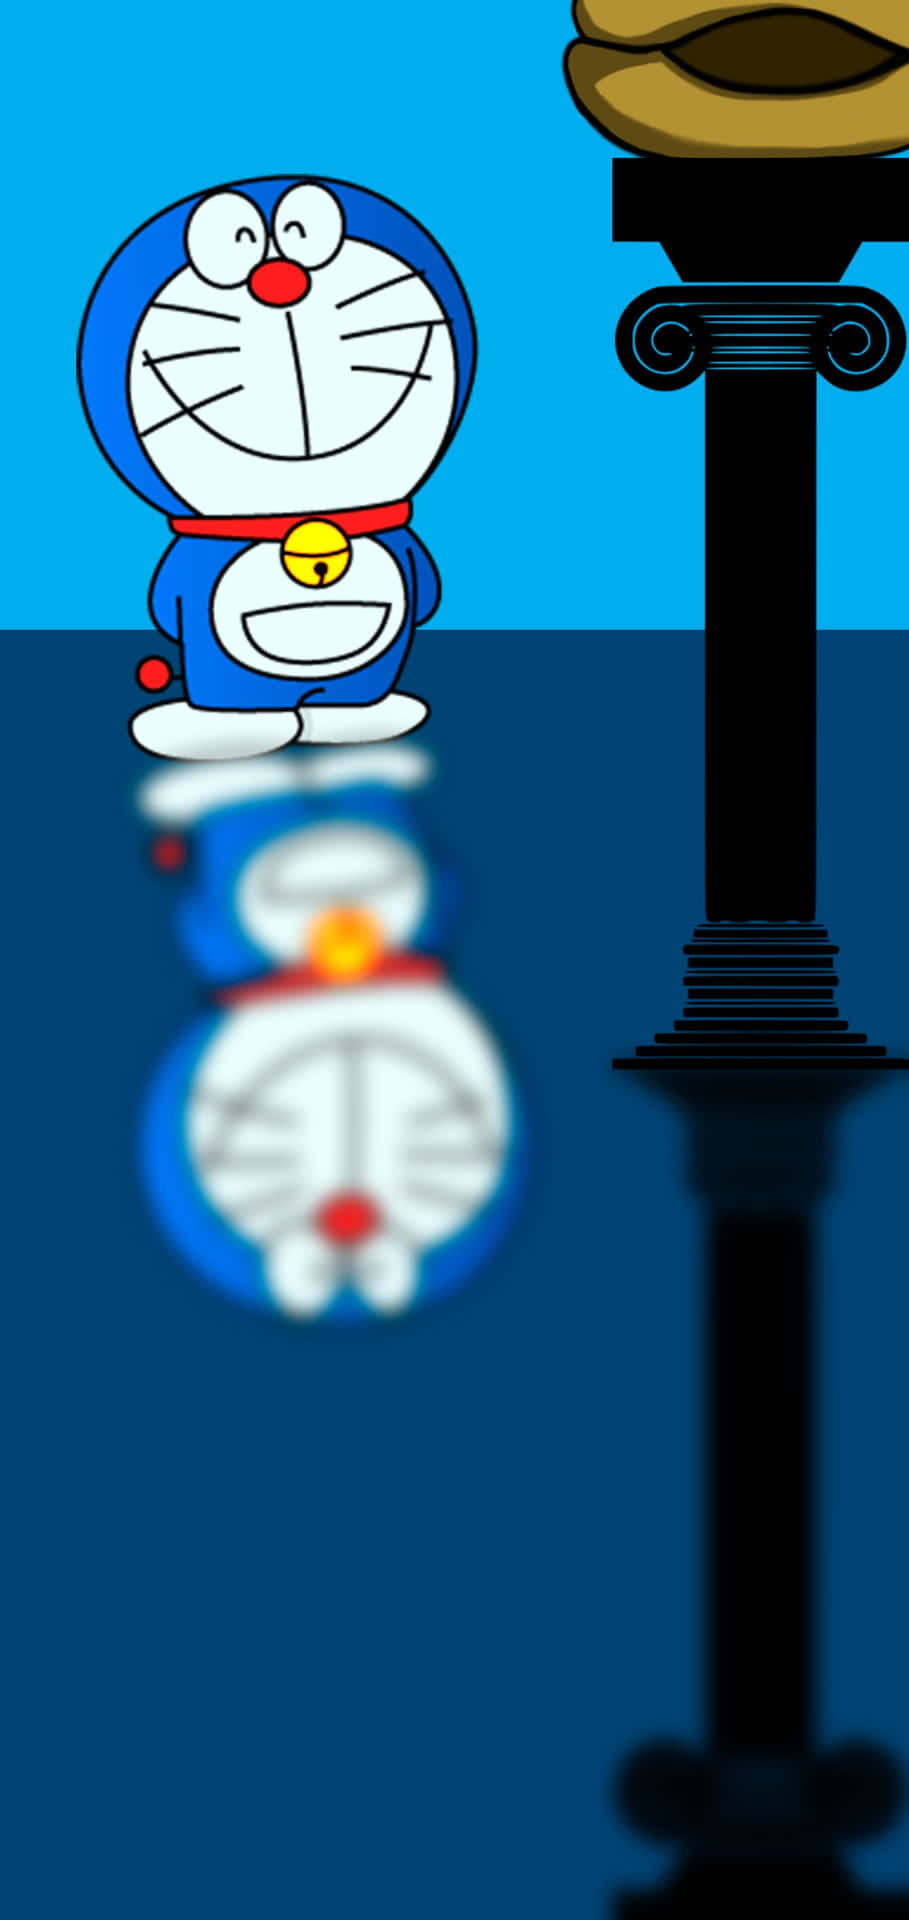 Fotoetaf Den Fjollede Og Sjovelskende Doraemon.